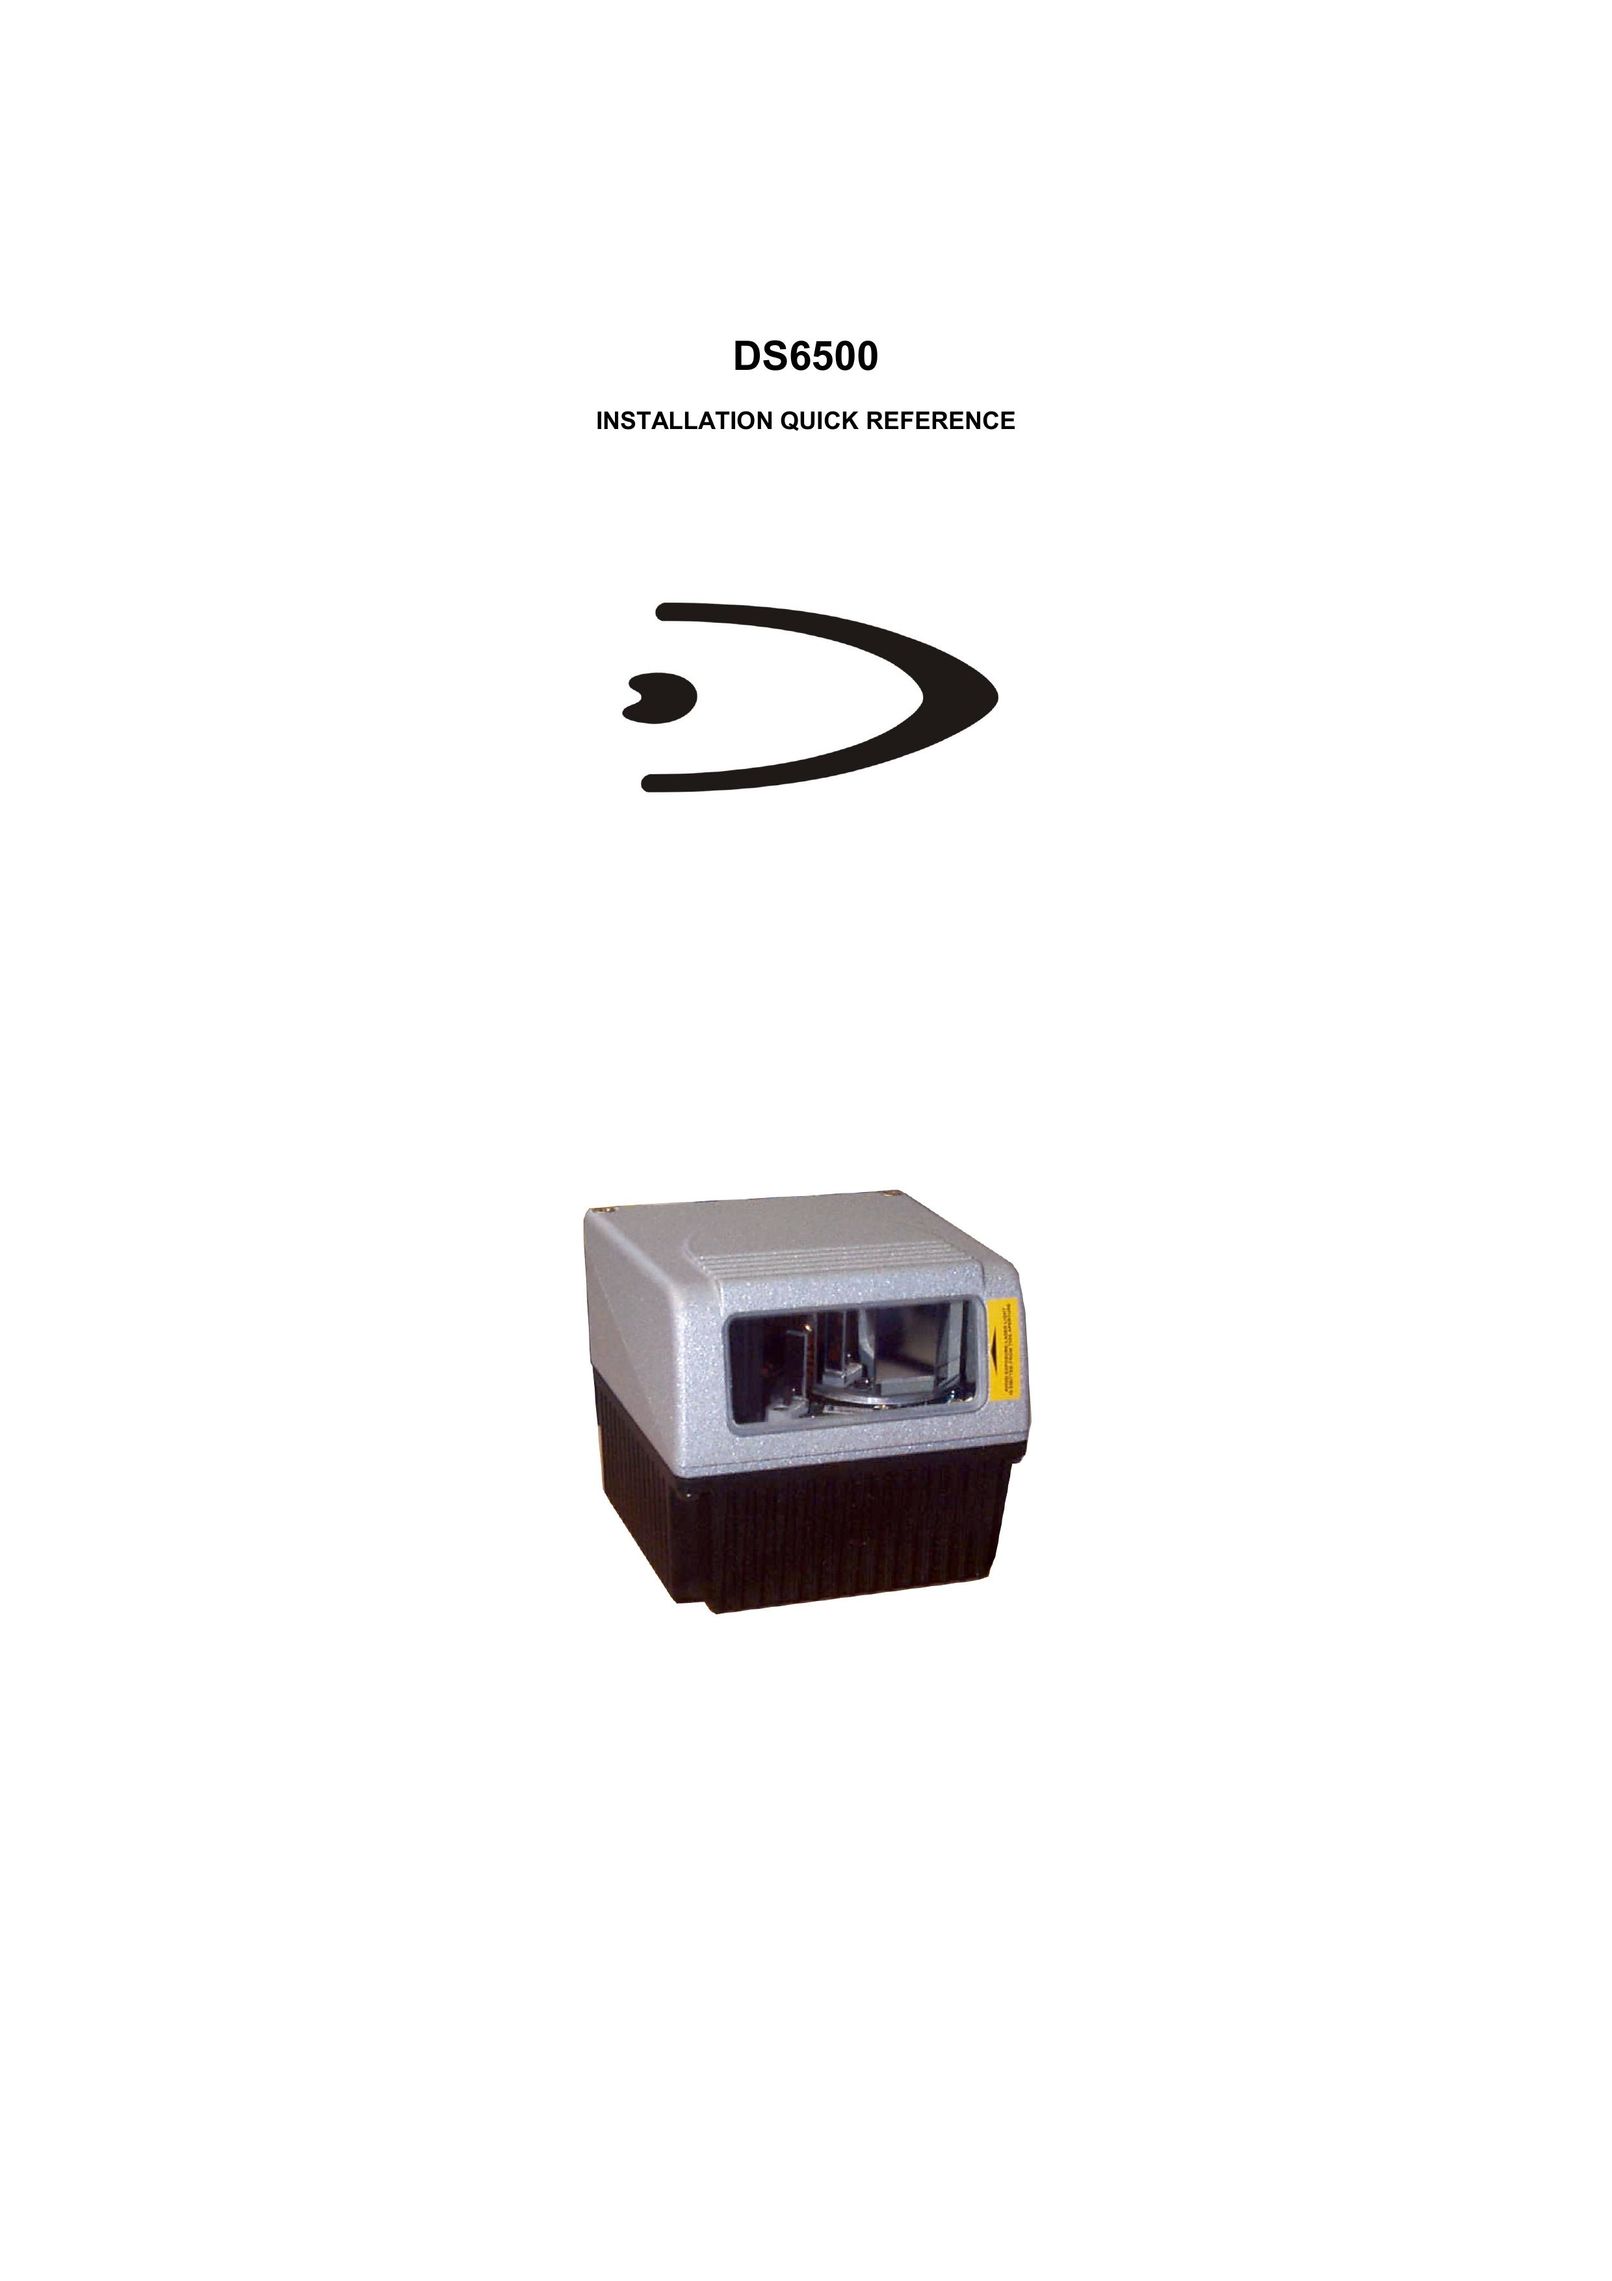 Datalogic Scanning DS6500-100-012 Scanner User Manual